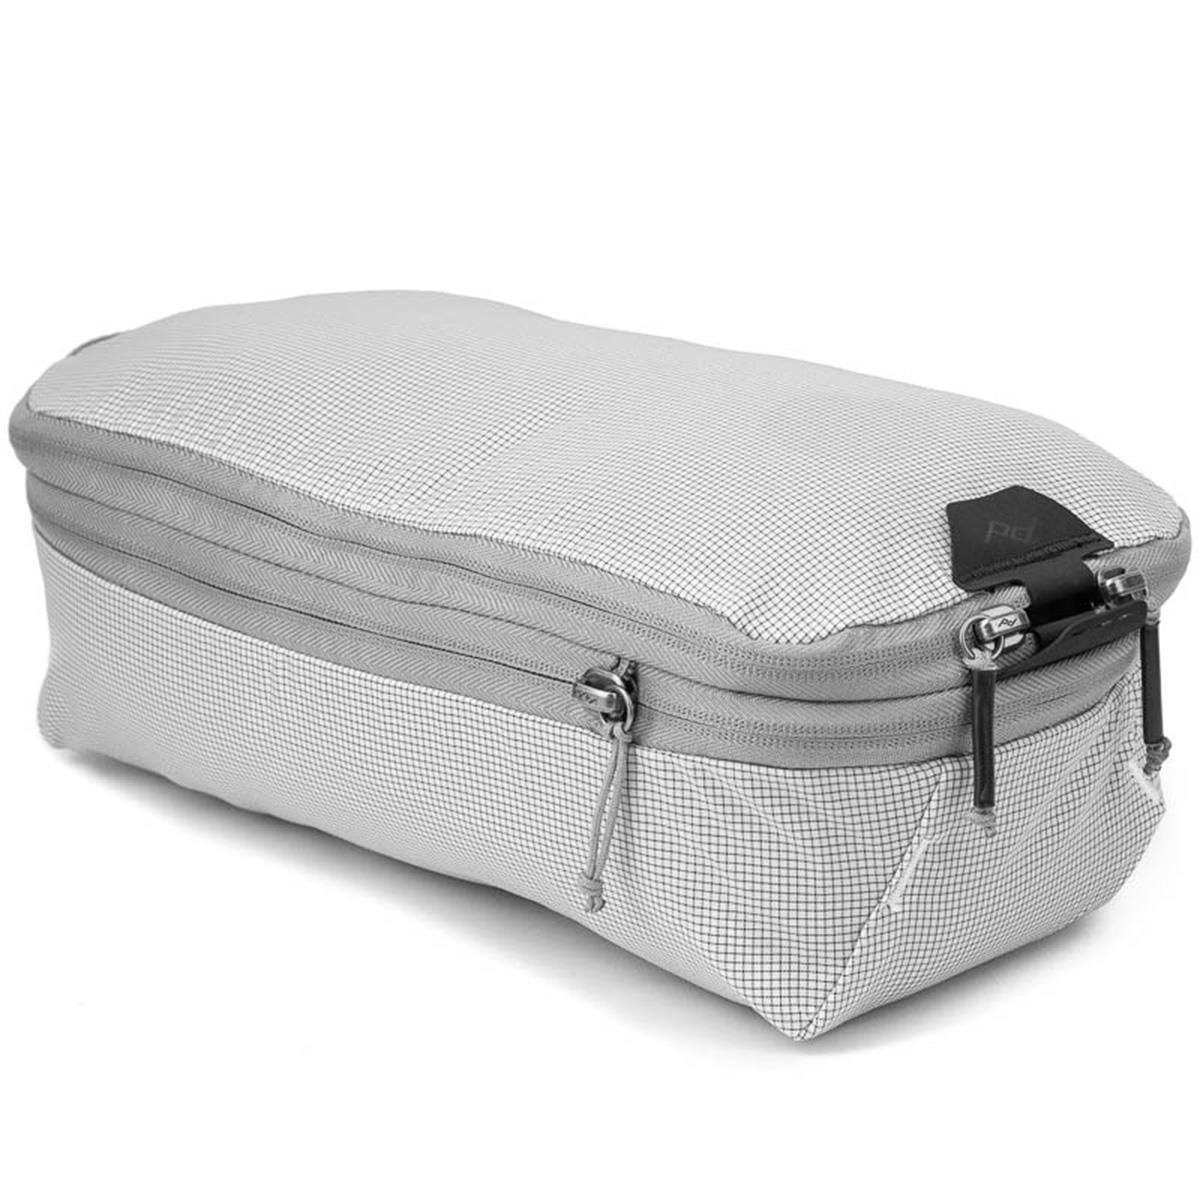 Günstig und beliebt Peak Design Rucksack Packing Cube (natur) Travel 9L für Backpack Raw Small